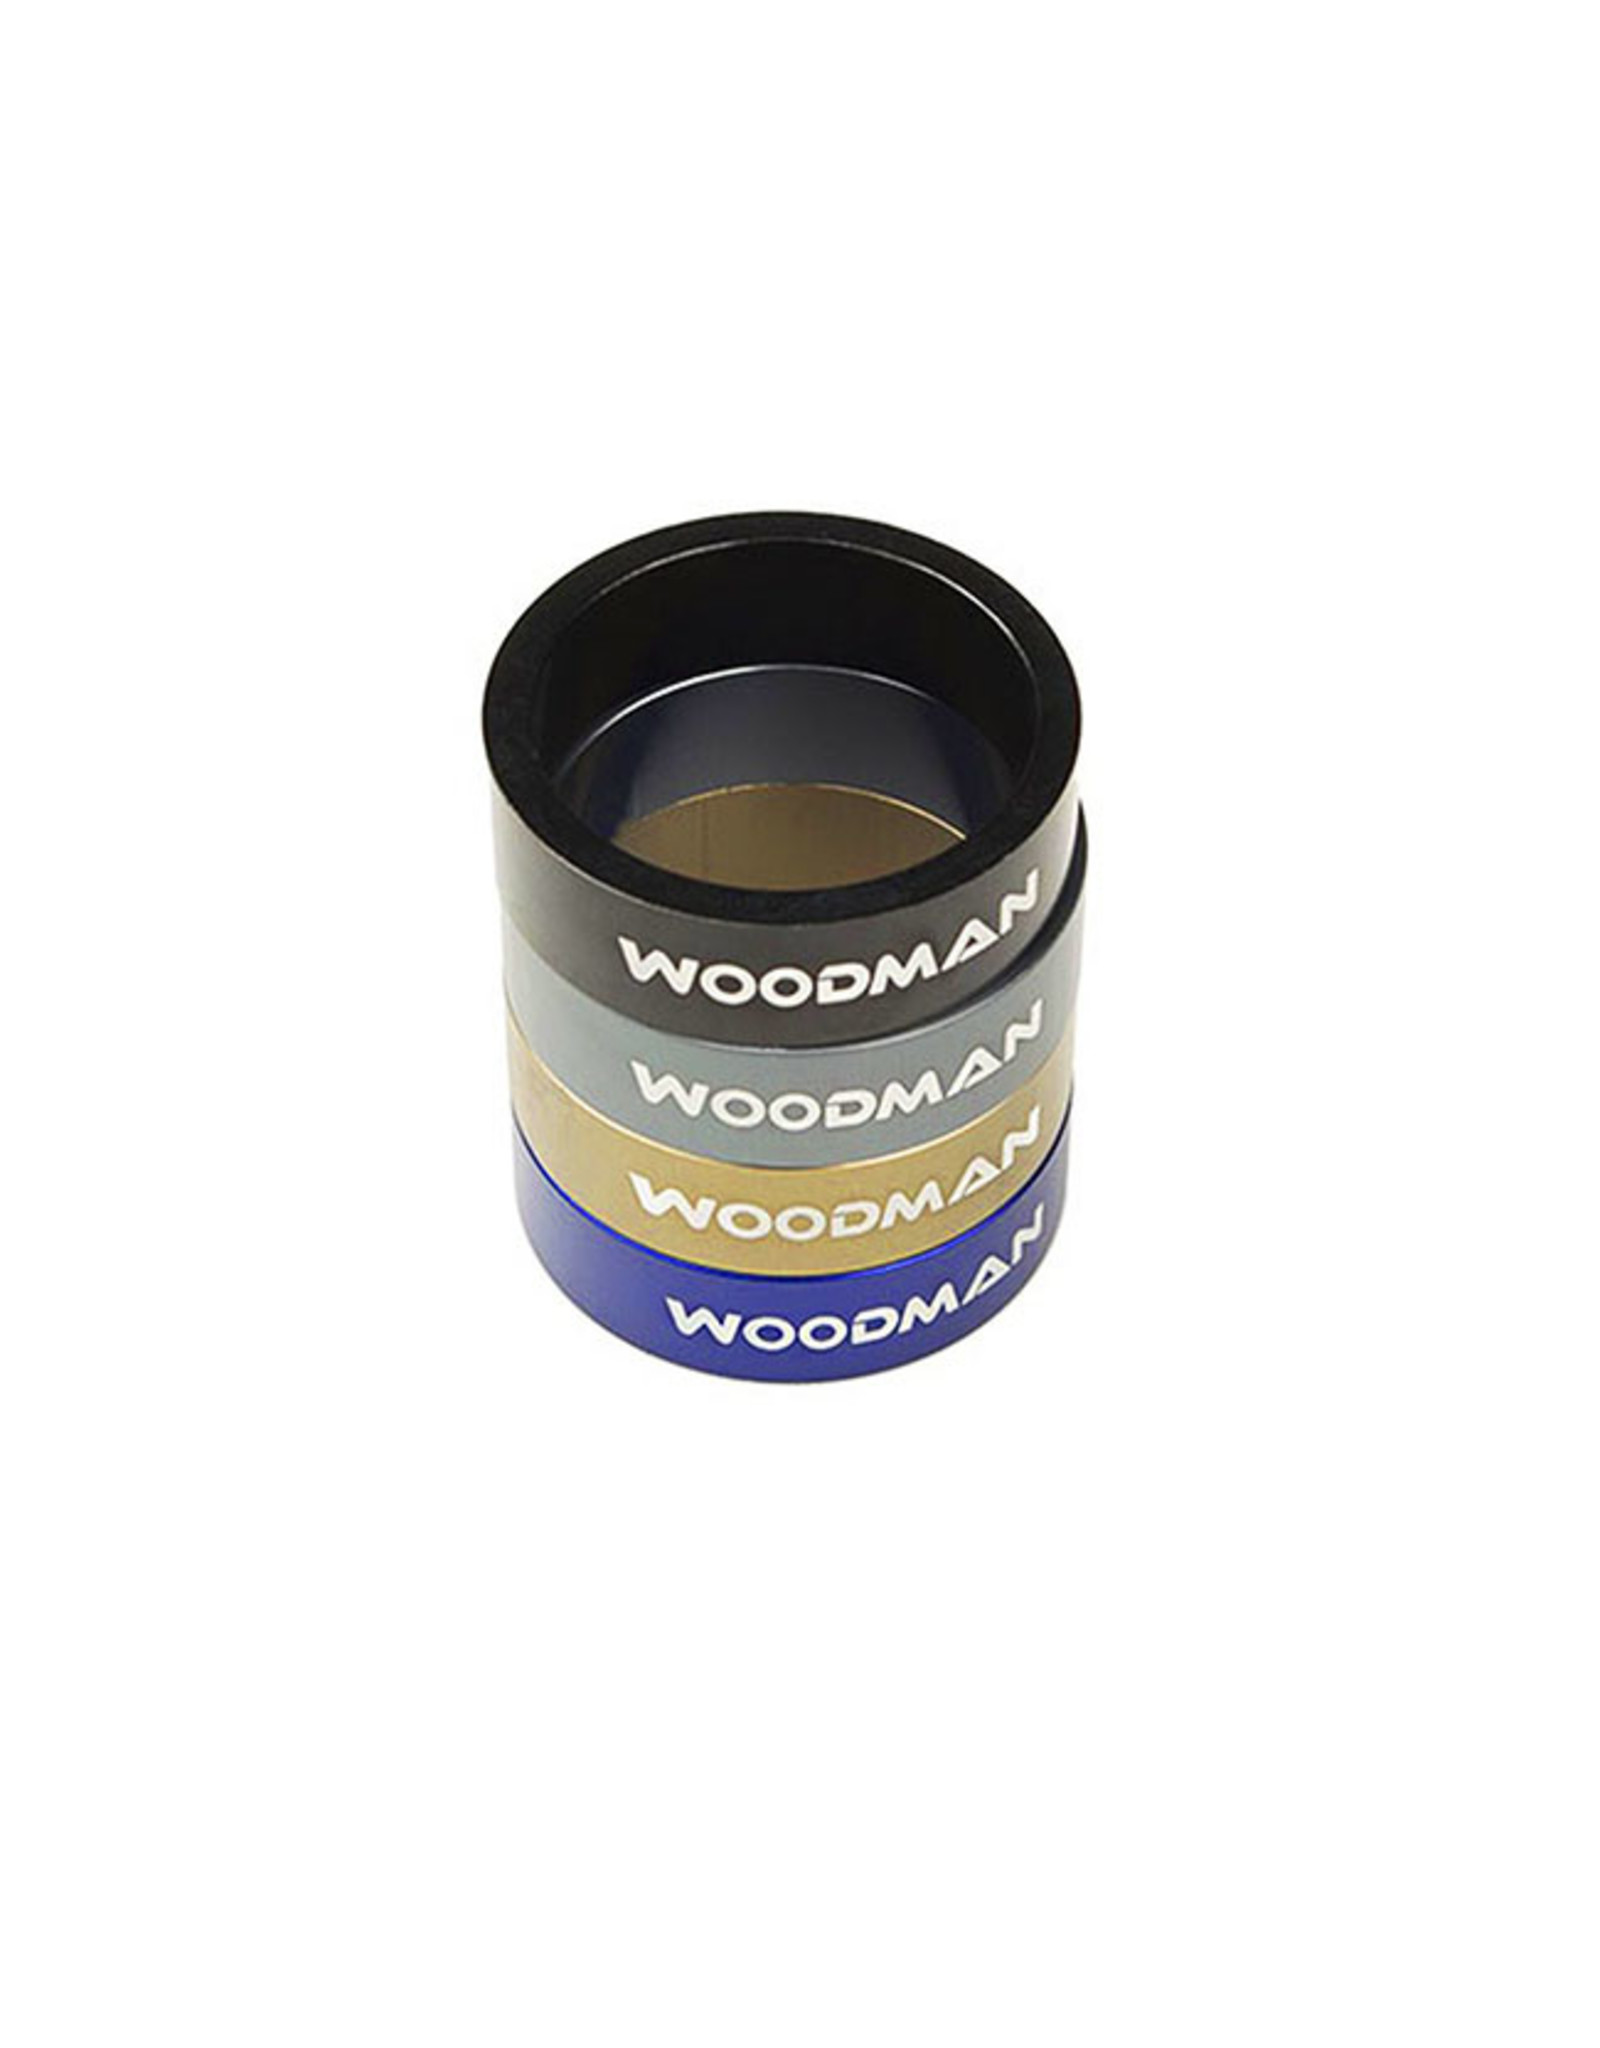 Woodman Woodman SL Ring Headset Spacers